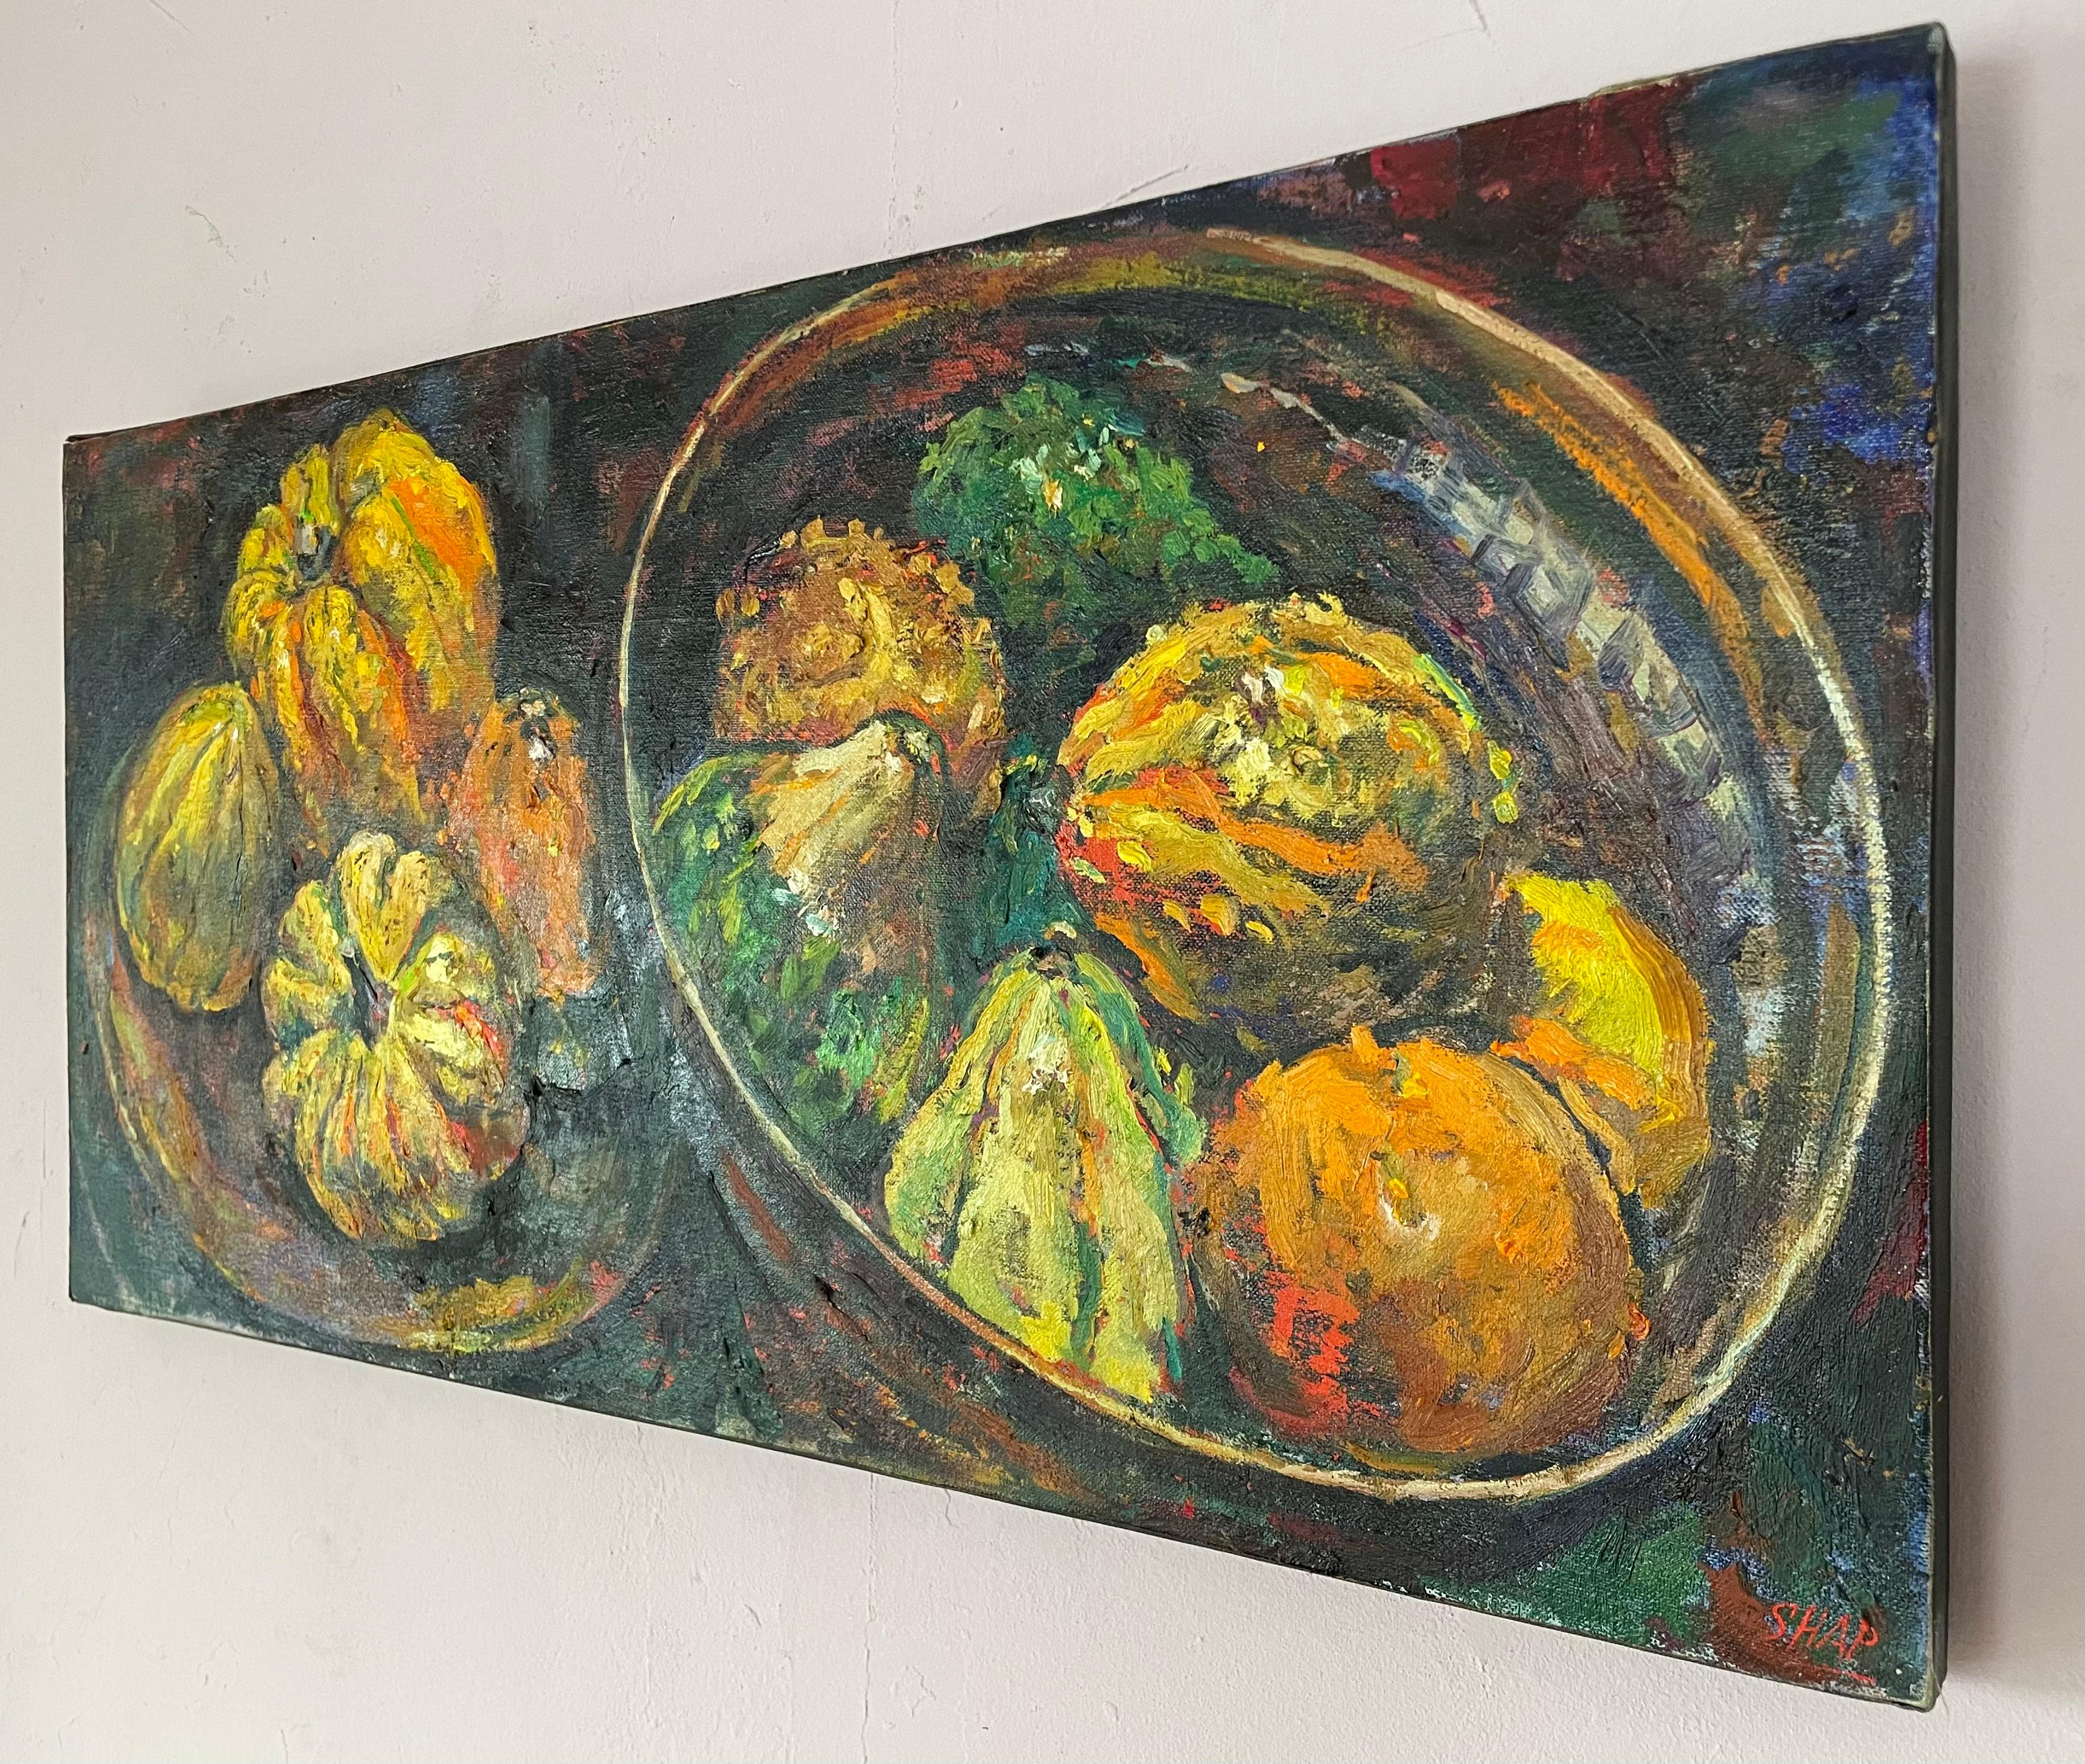 Original-Ölgemälde des berühmten kalifornischen Landschaftsmalers des zwanzigsten Jahrhunderts, Ronald Shap. Ein einzigartiges Doppelstillleben mit zwei Schalen mit Herbstkürbissen und Kürbissen in einem lockeren, impressionistischen Stil. Die